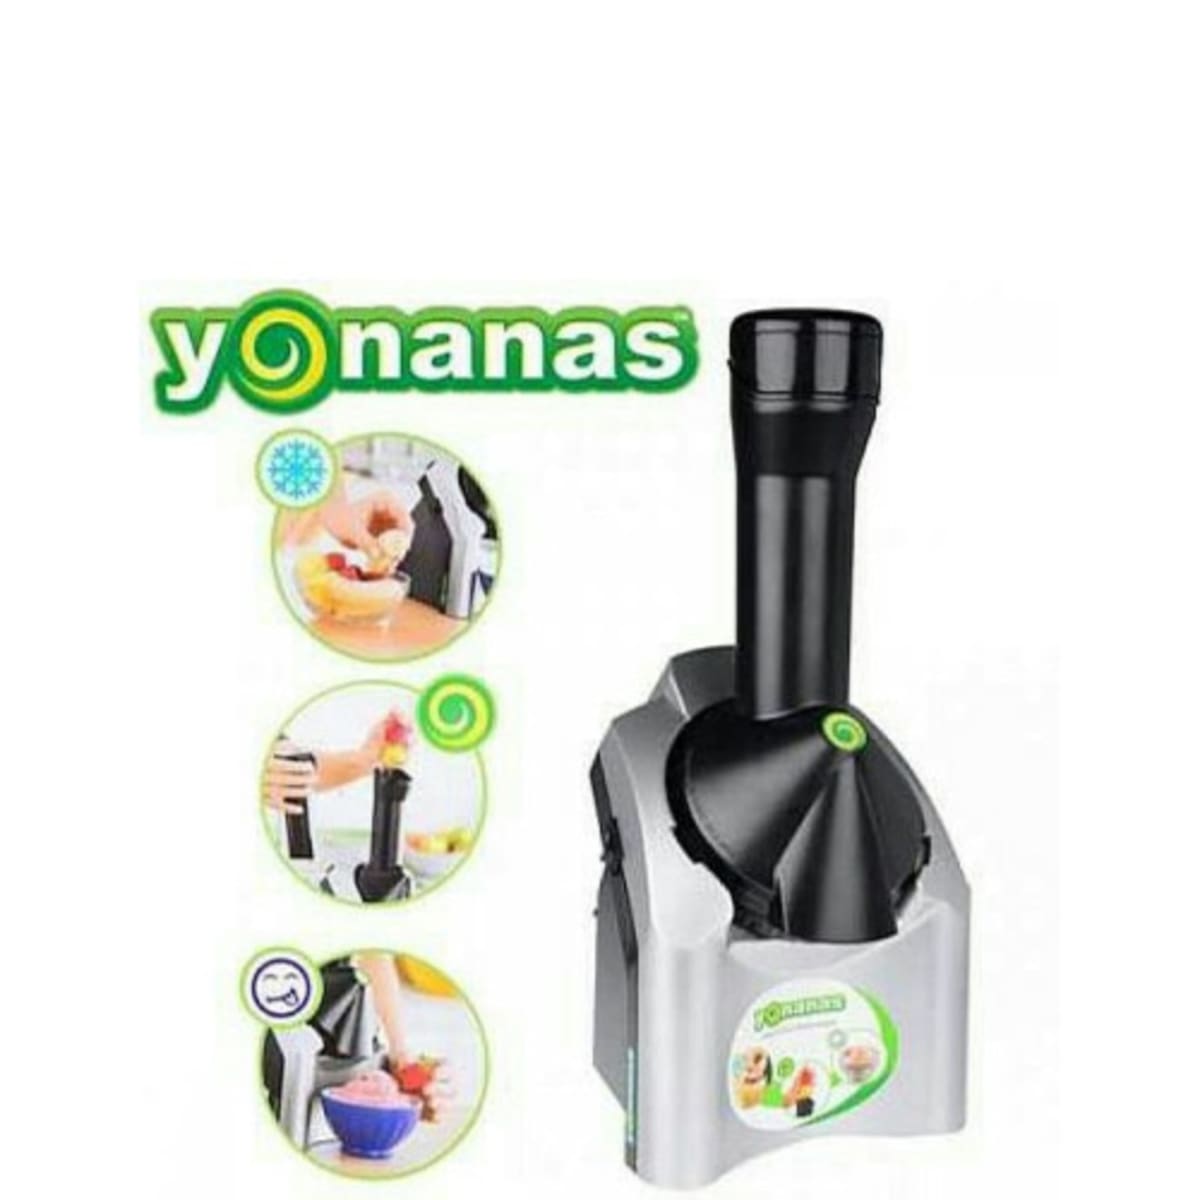 Shop Yonanas Online